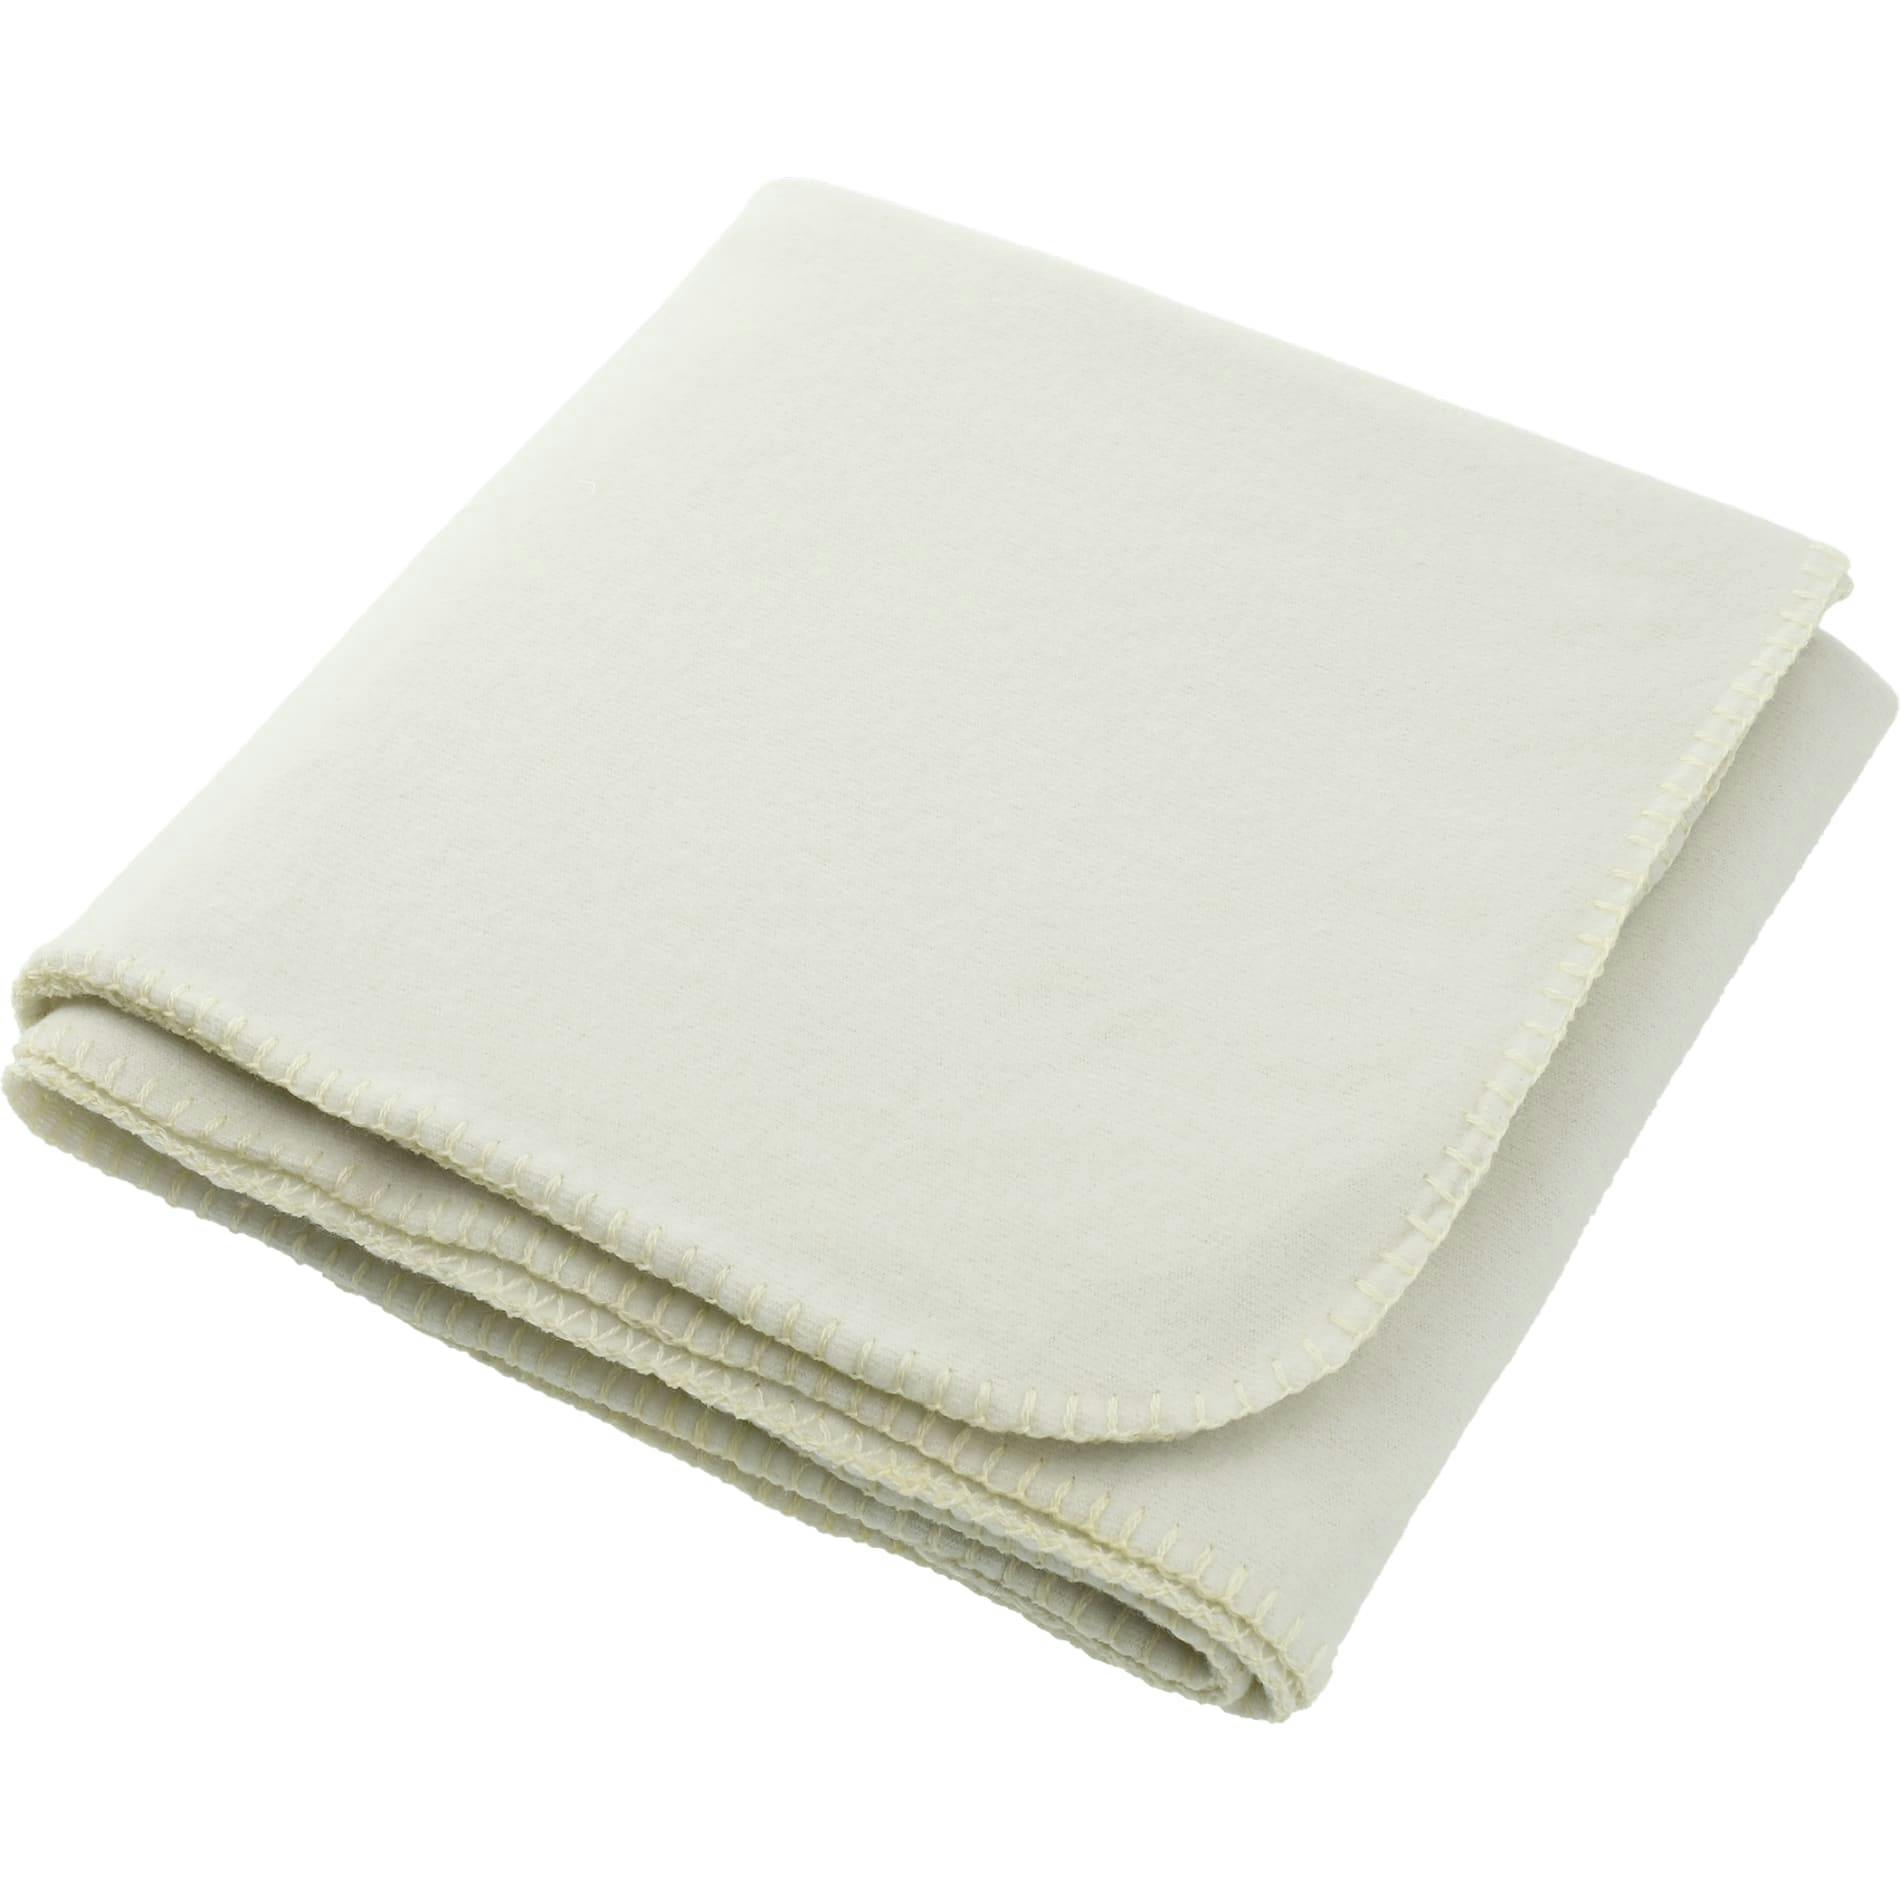 100% Recycled PET Fleece Blanket - additional Image 3